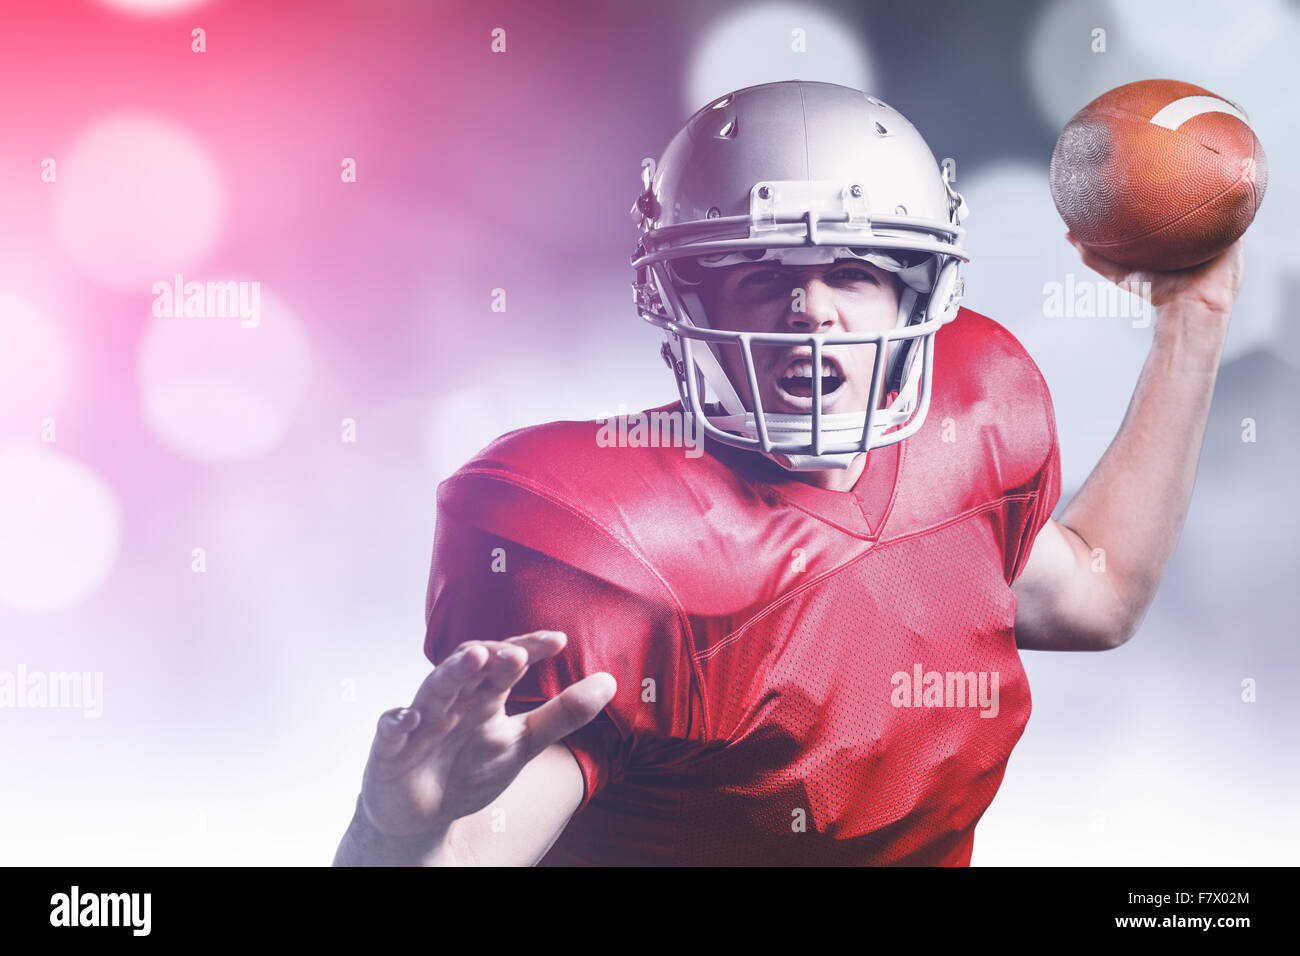 Immagine composita del ritratto di giocatore di football americano gettando la sfera Foto Stock